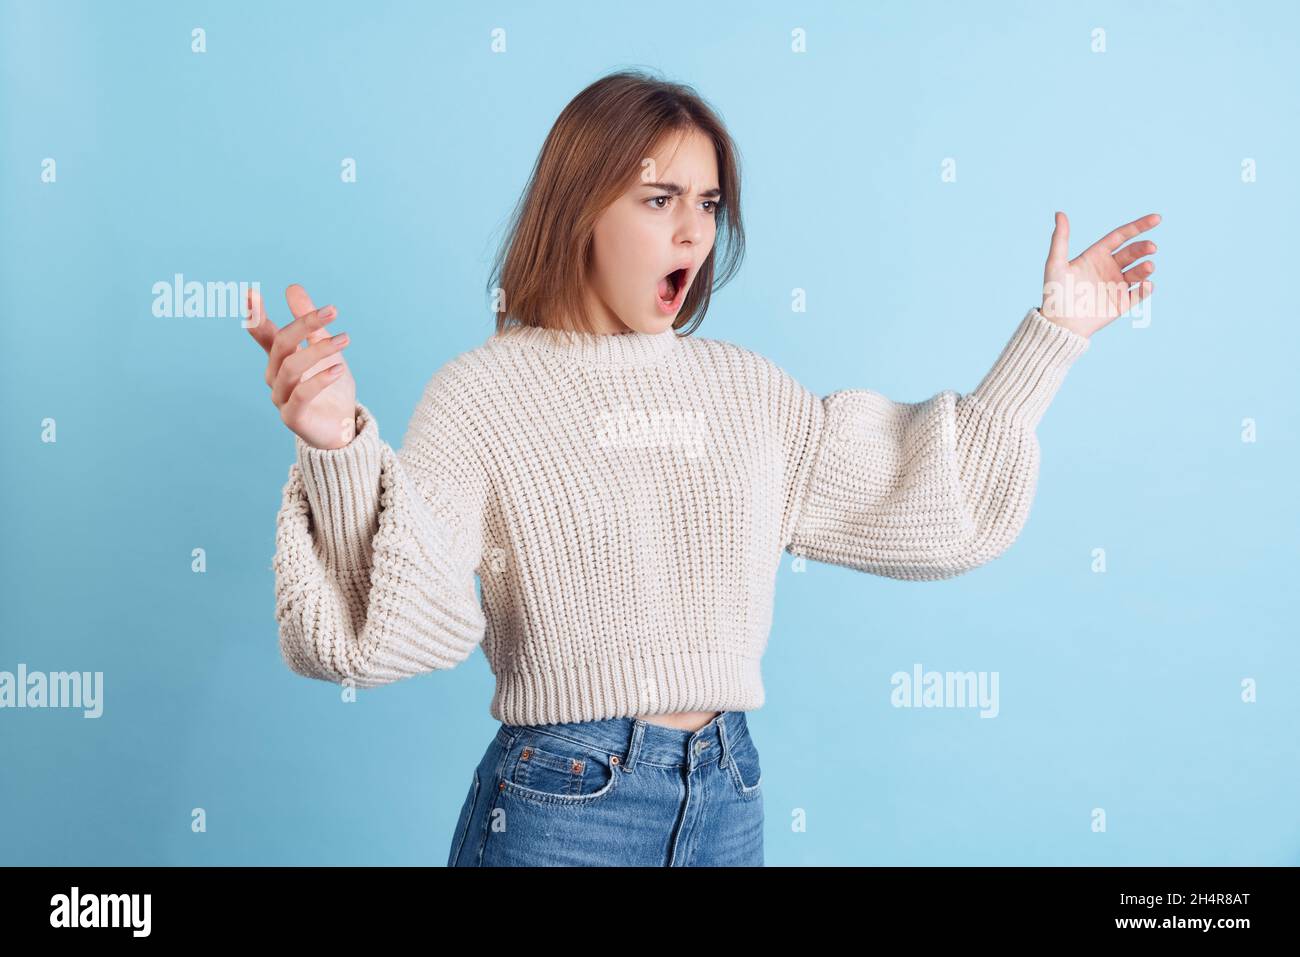 Dynamisches Bild von jungen beuatiful Mädchen, Student in Freizeitkleidung öffnet ihren Mund in Überraschung isoliert auf hellblauem Studio-Hintergrund. Stockfoto